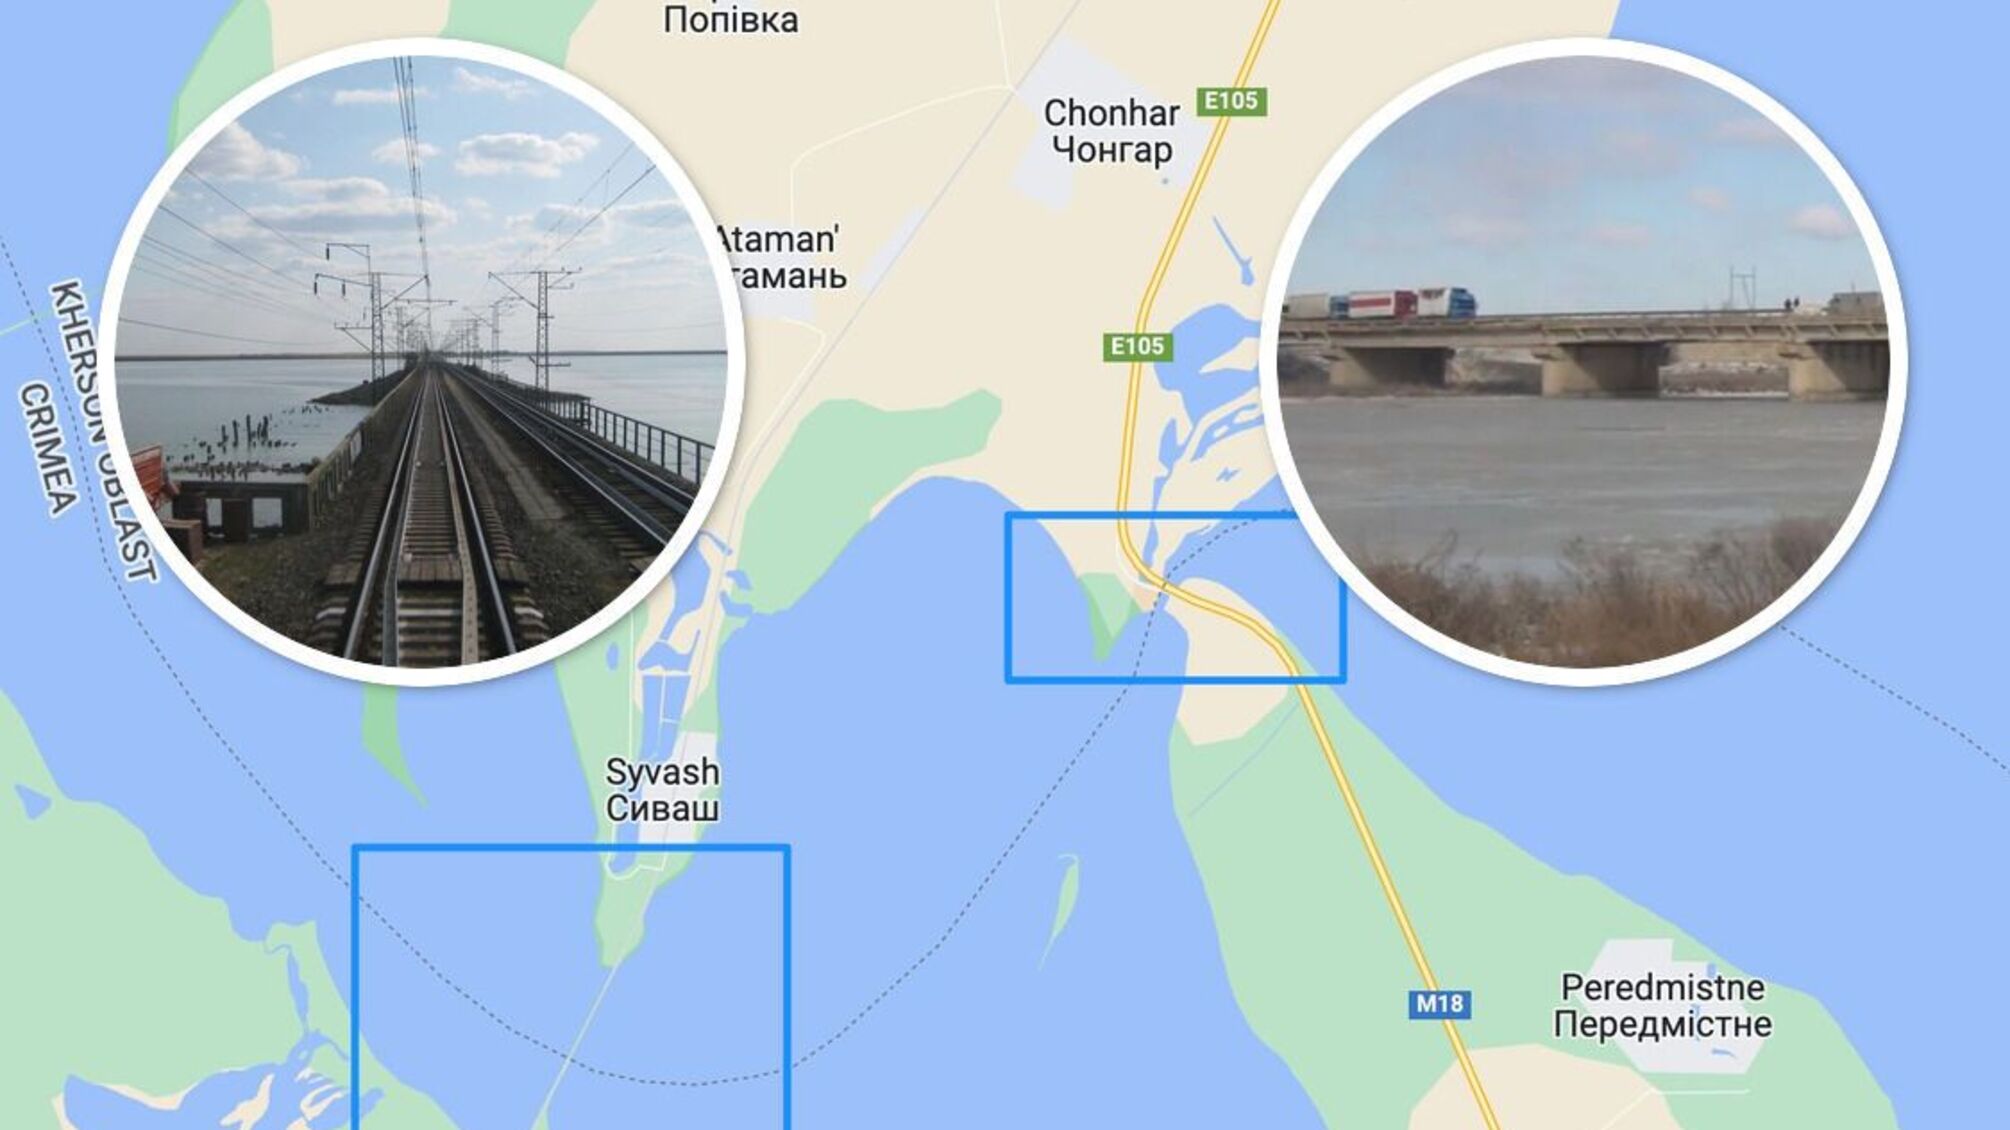 Логистика обеспечения группировок врага на юге зависит от двух мостов из Крыма